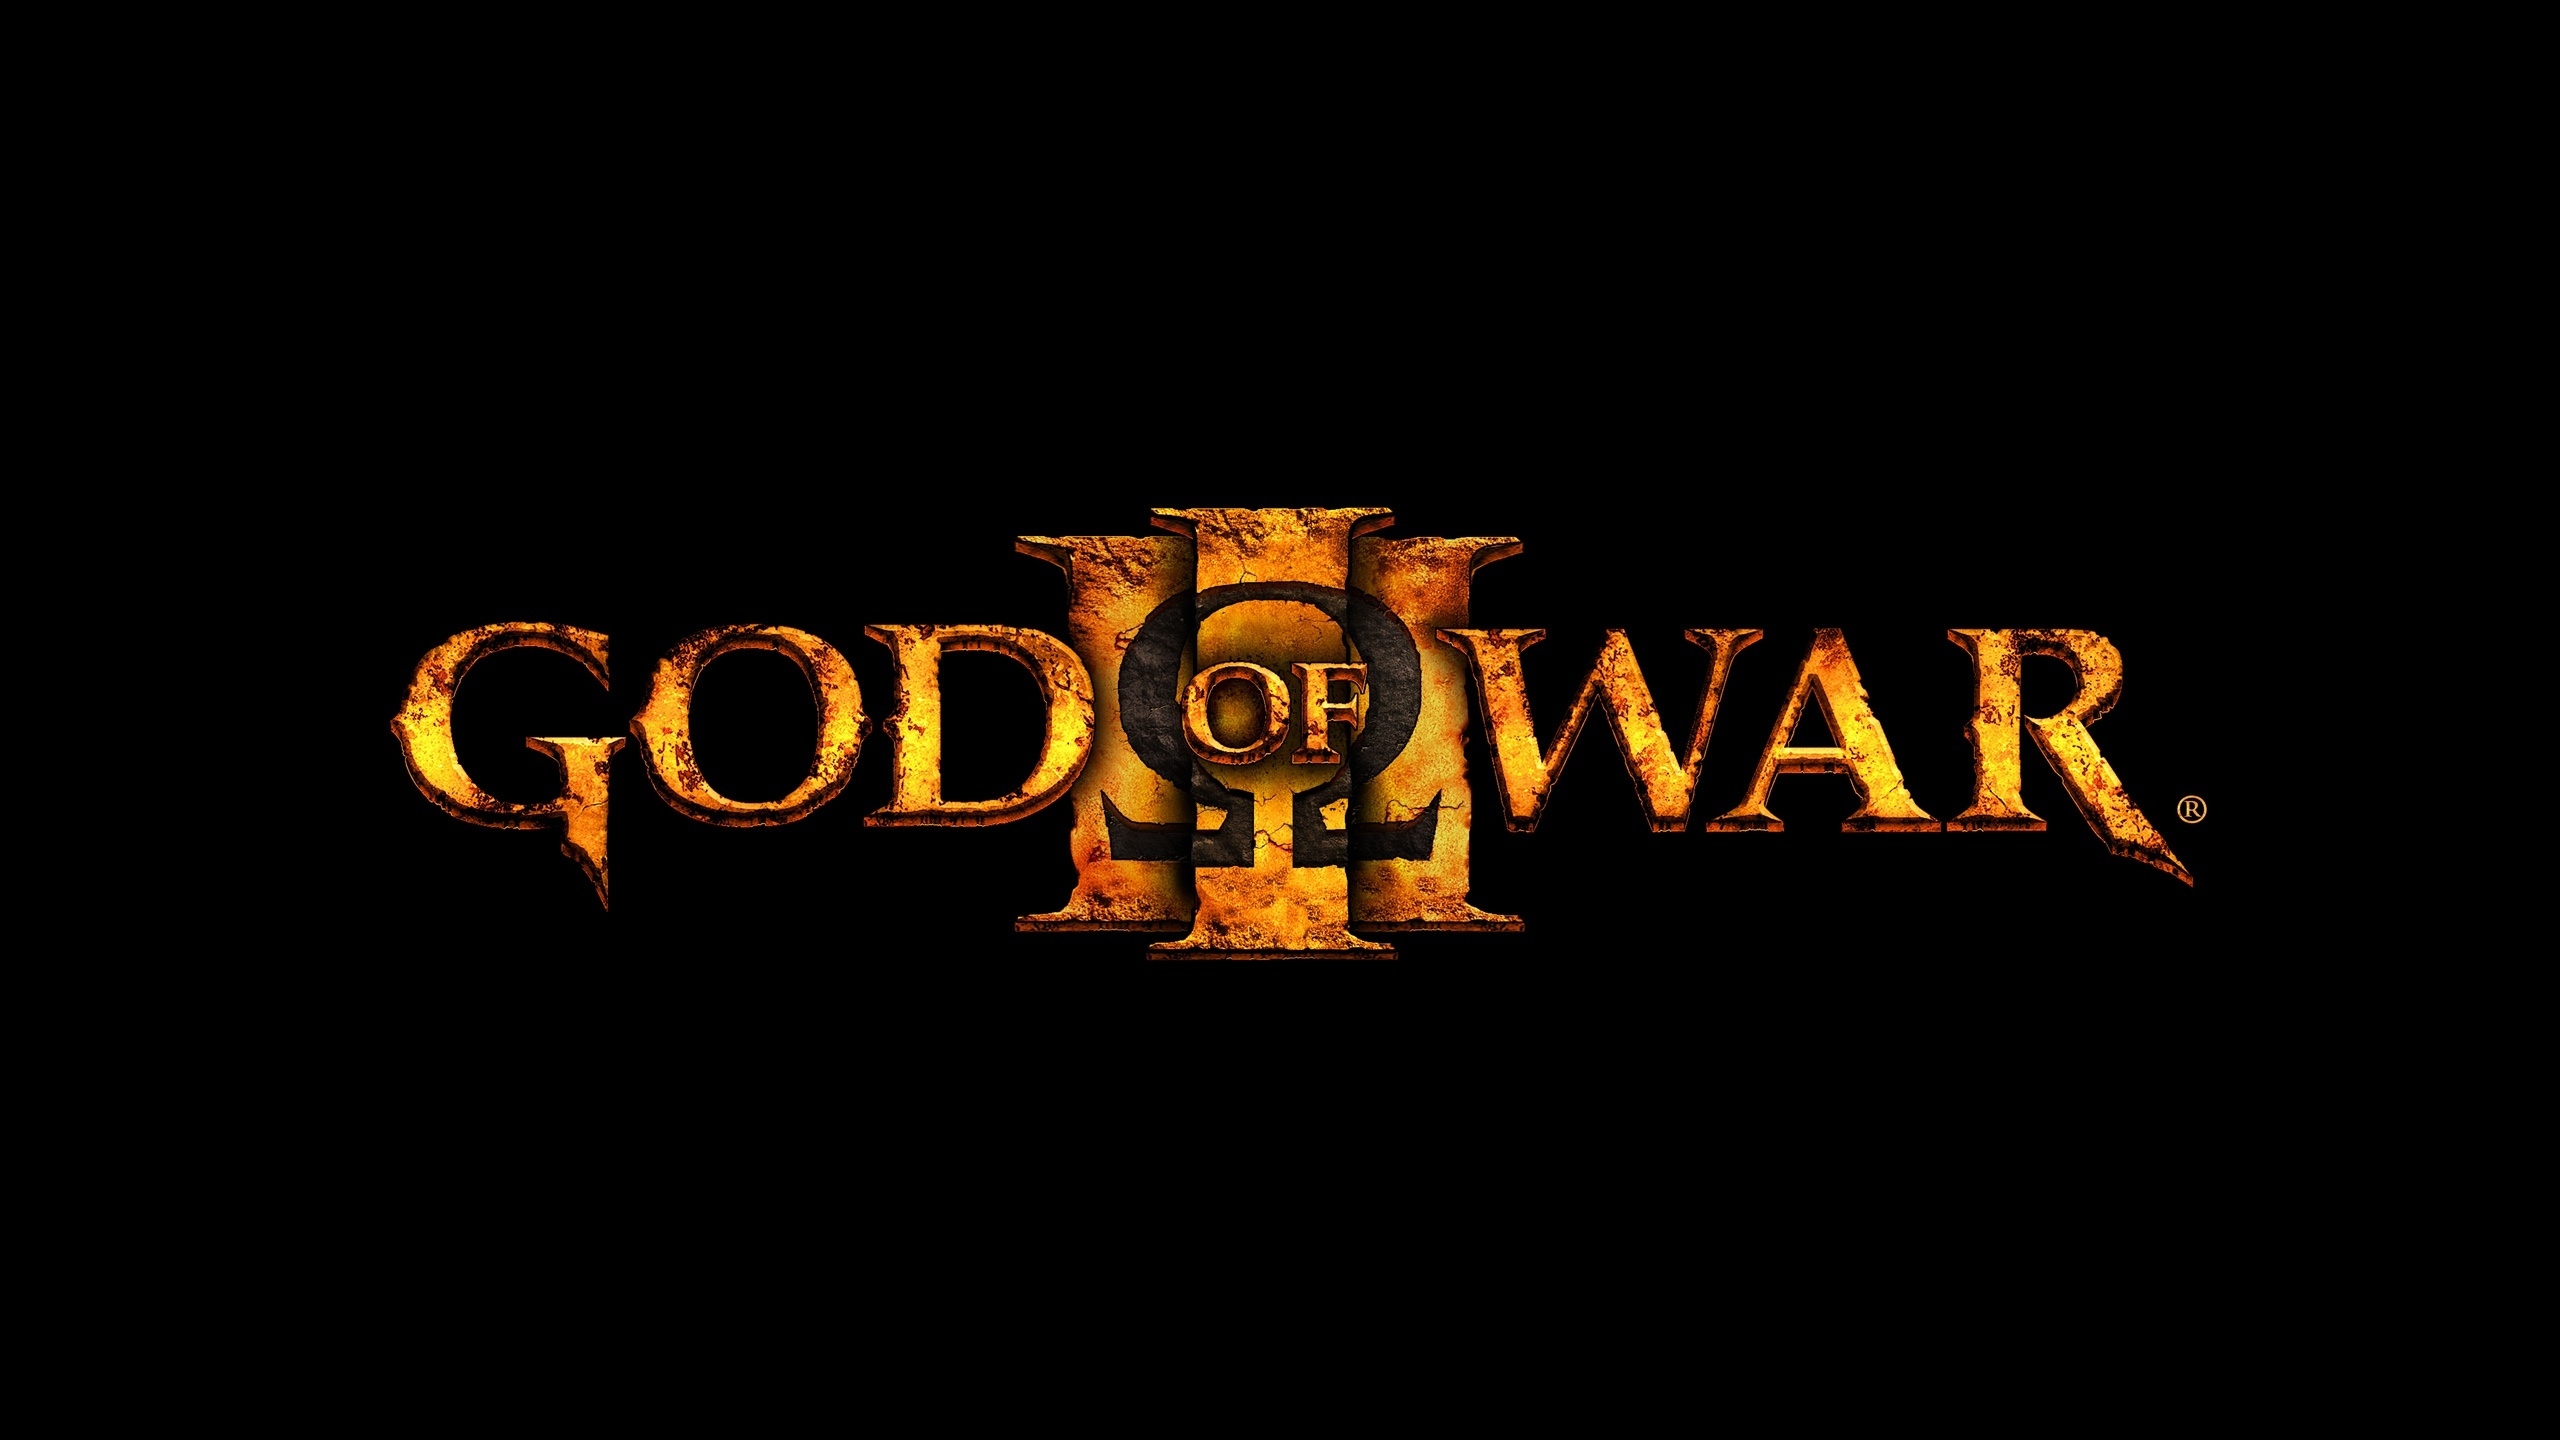 God of War 3 Logo for 2560x1440 HDTV resolution